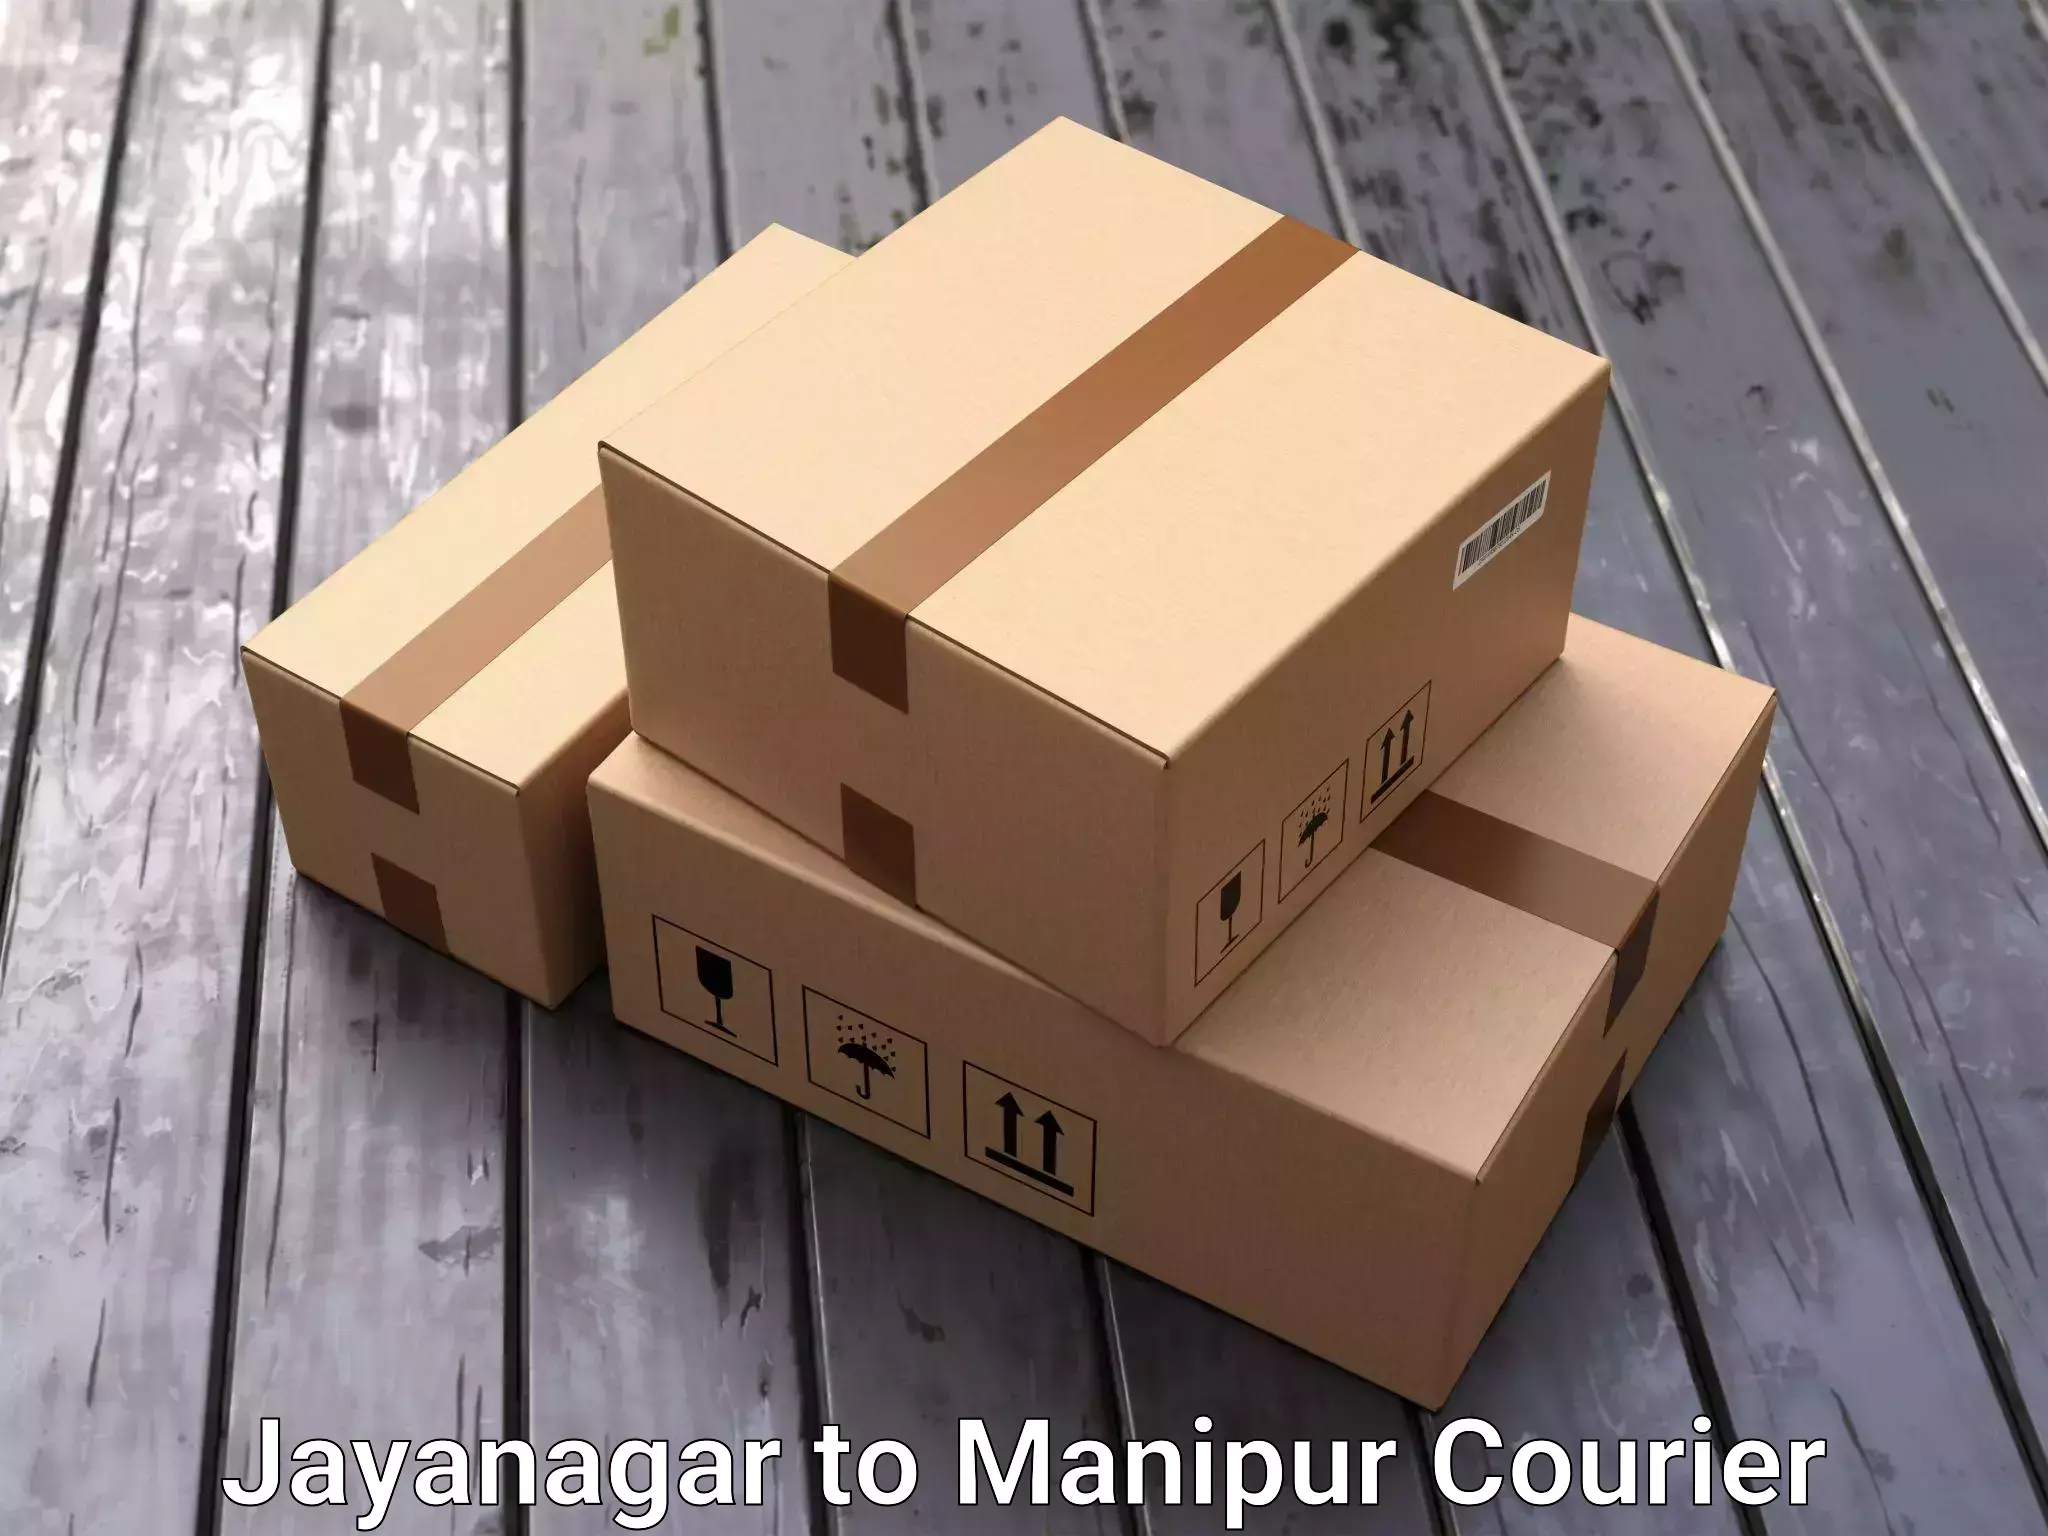 Door-to-door relocation services in Jayanagar to Manipur